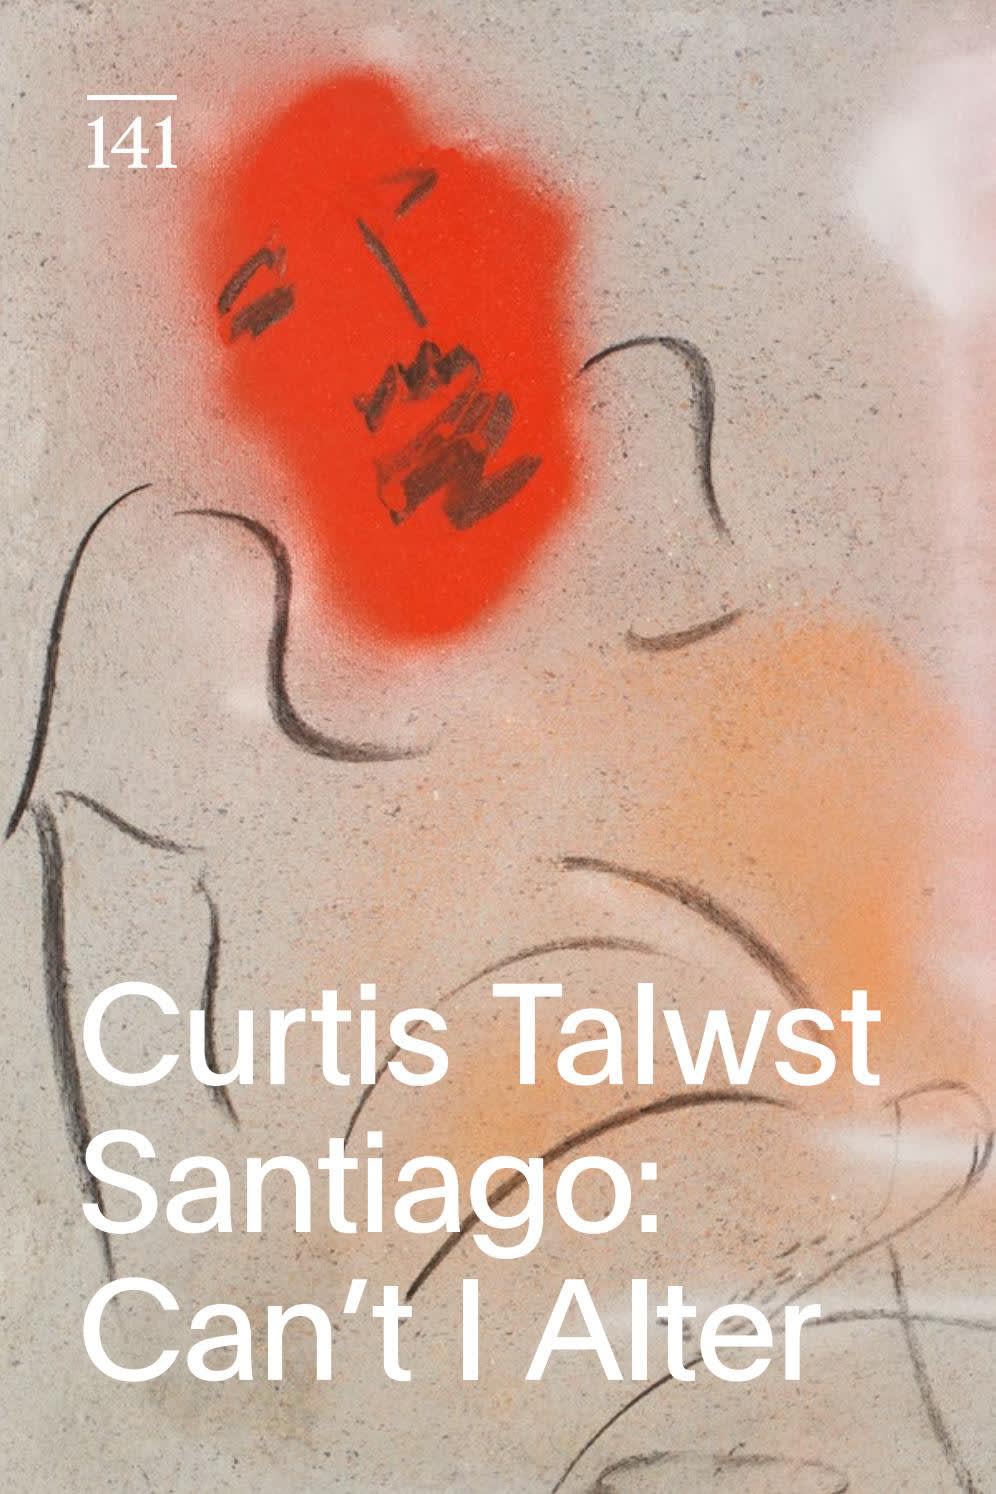 Curtis Talwst Santiago